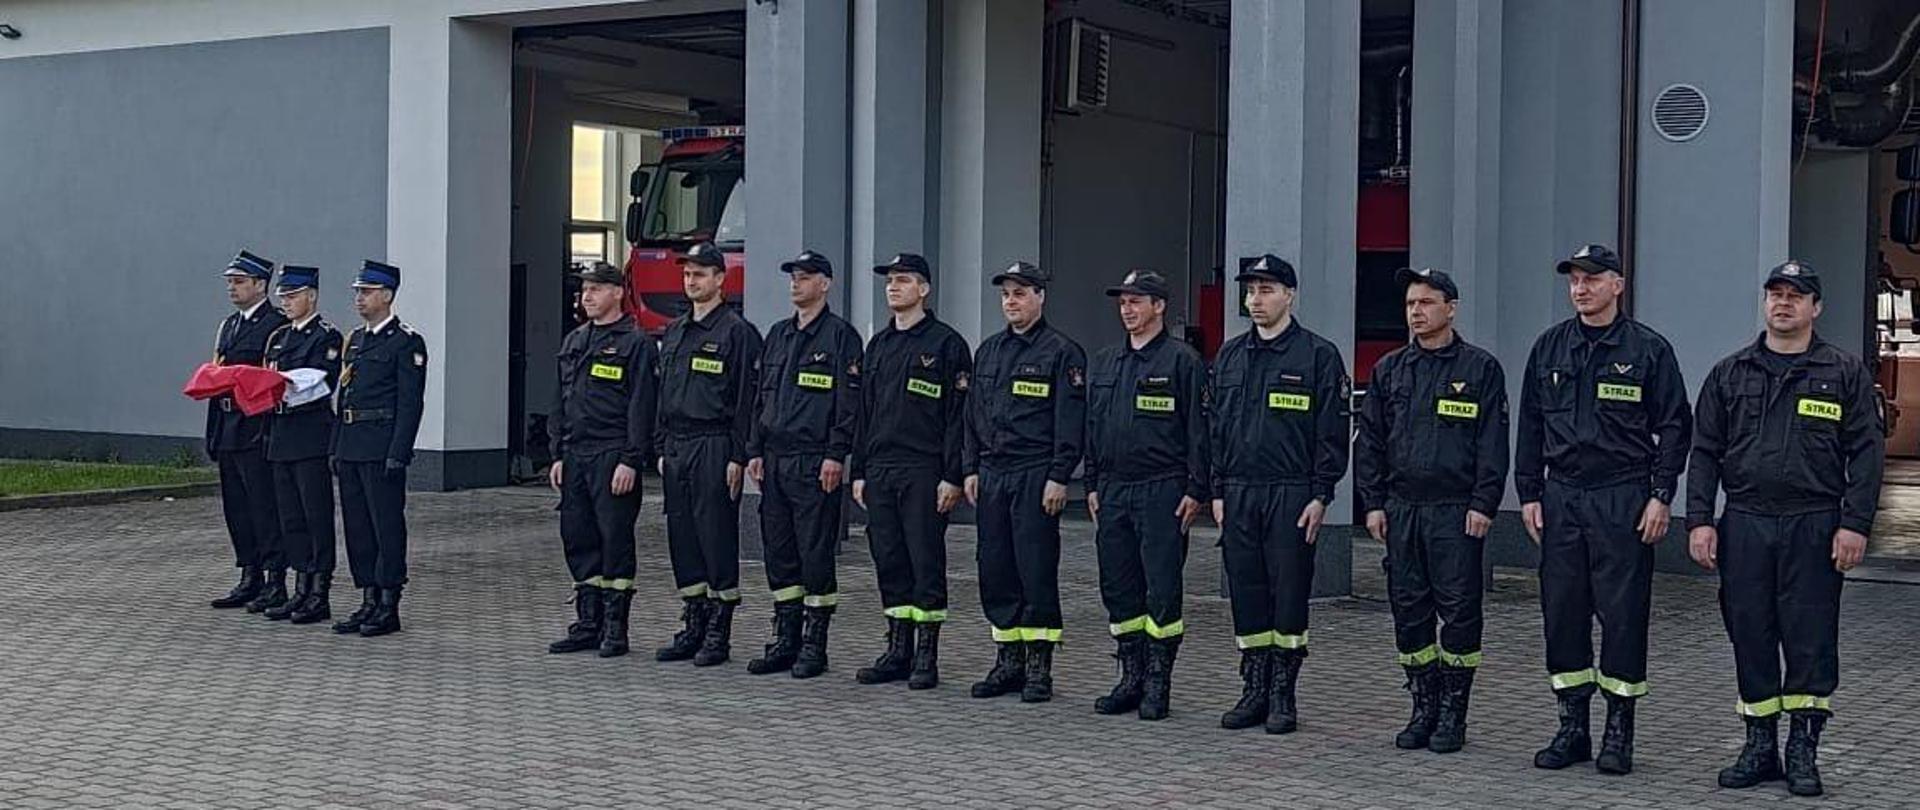 Na zdjęciu widać trzech strażaków, którzy trzymają na rękach flagę Polski. Po prawej stronie stoją strażacy w jednym rzędzie. W sumie trzynaście osób. Wszyscy ubrani są w czarne stroje z jasnożółtymi odblaskami z napisem straż. Na głowach strażacy mają założone czapki z daszkiem. Uroczysta zbiórka odbywa się na placu manewrowym przed budynkiem Komendy Powiatowej Państwowej Straży Pożarnej w Łęczycy. W tle widać budynek komendy. Jest widno. 